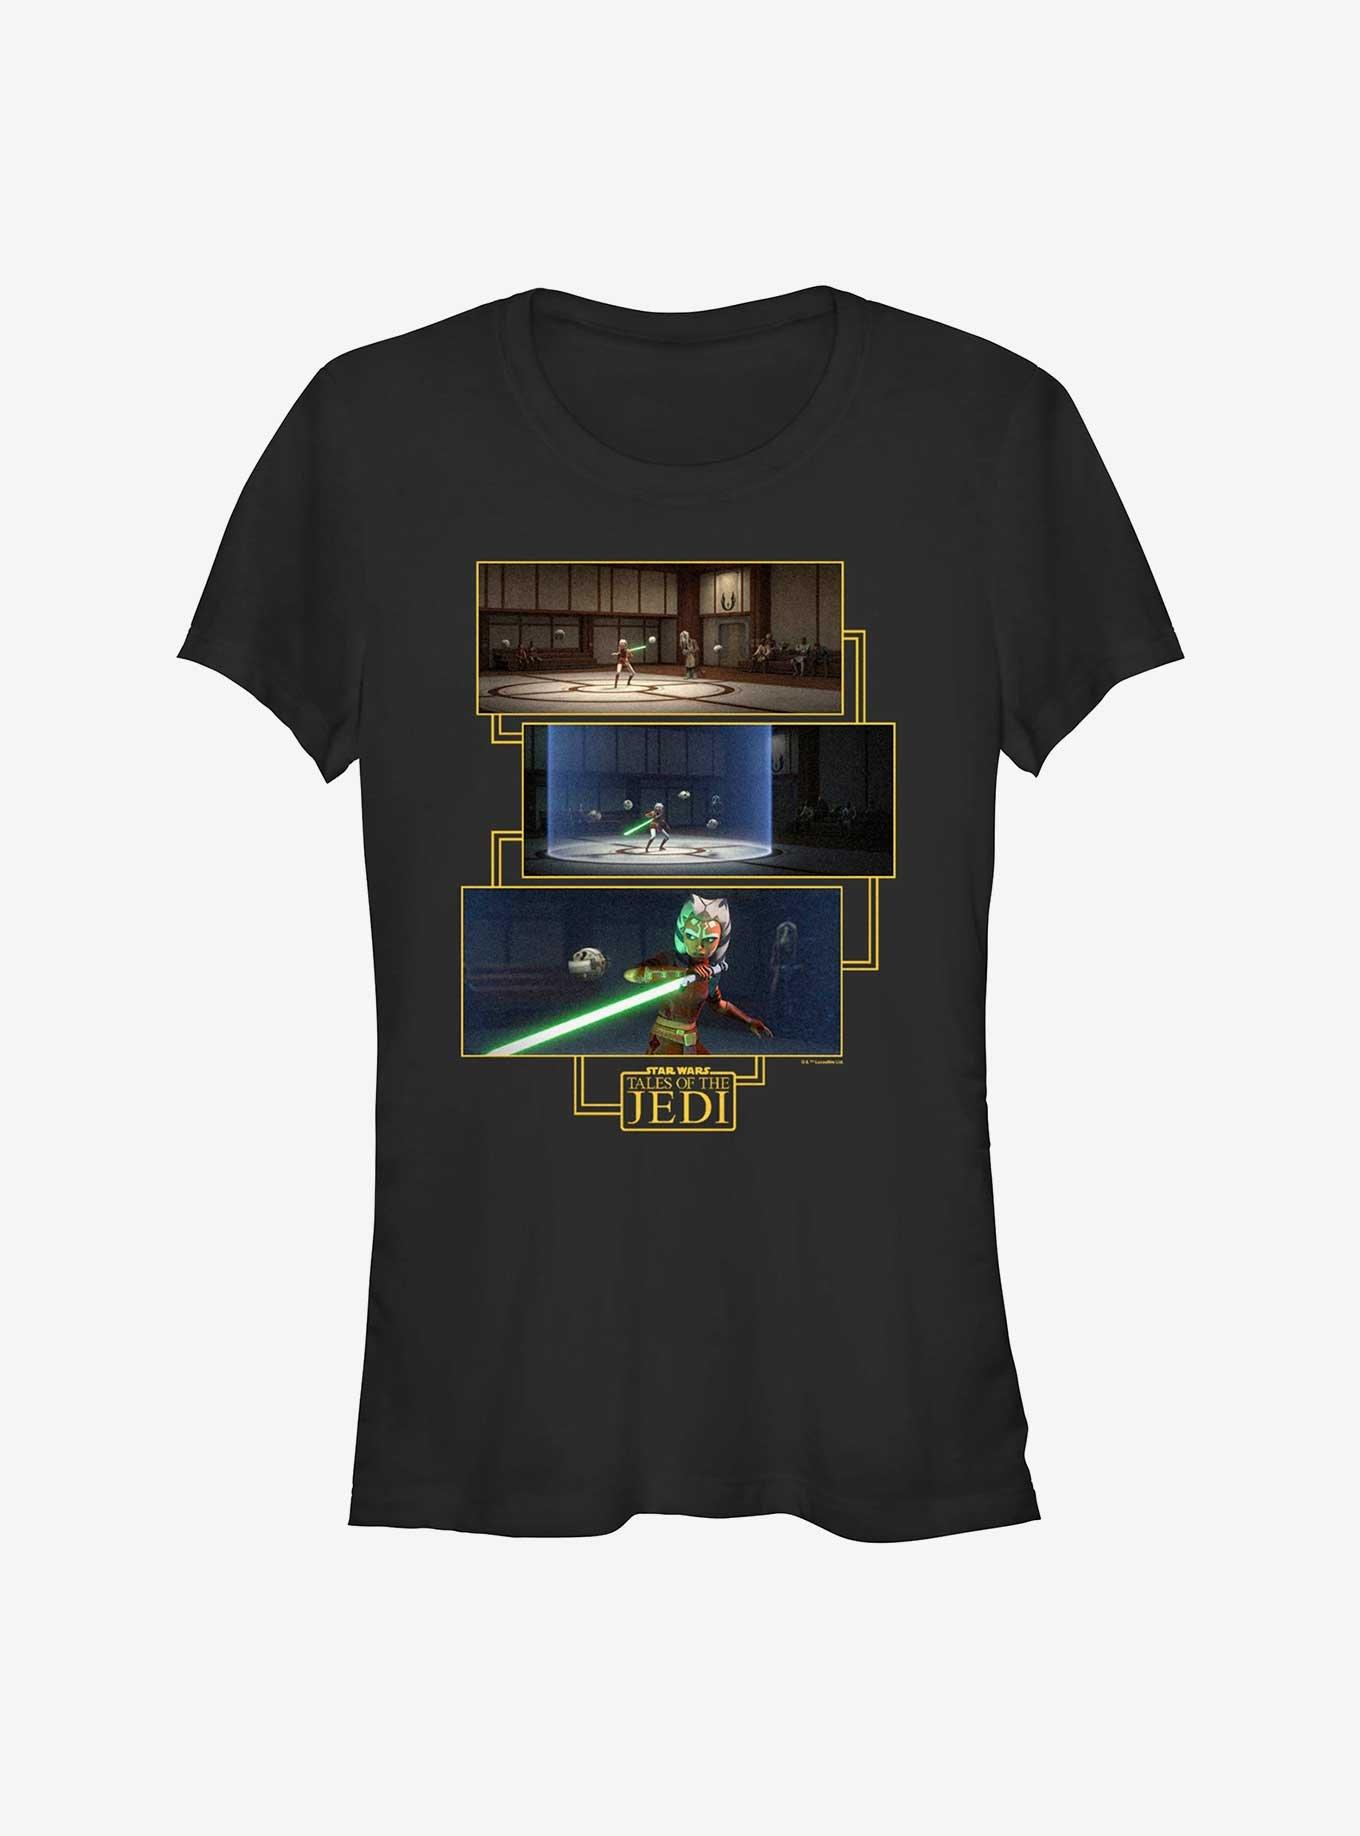 Star Wars: Tales of the Jedi Ashoka Panels Girls T-Shirt